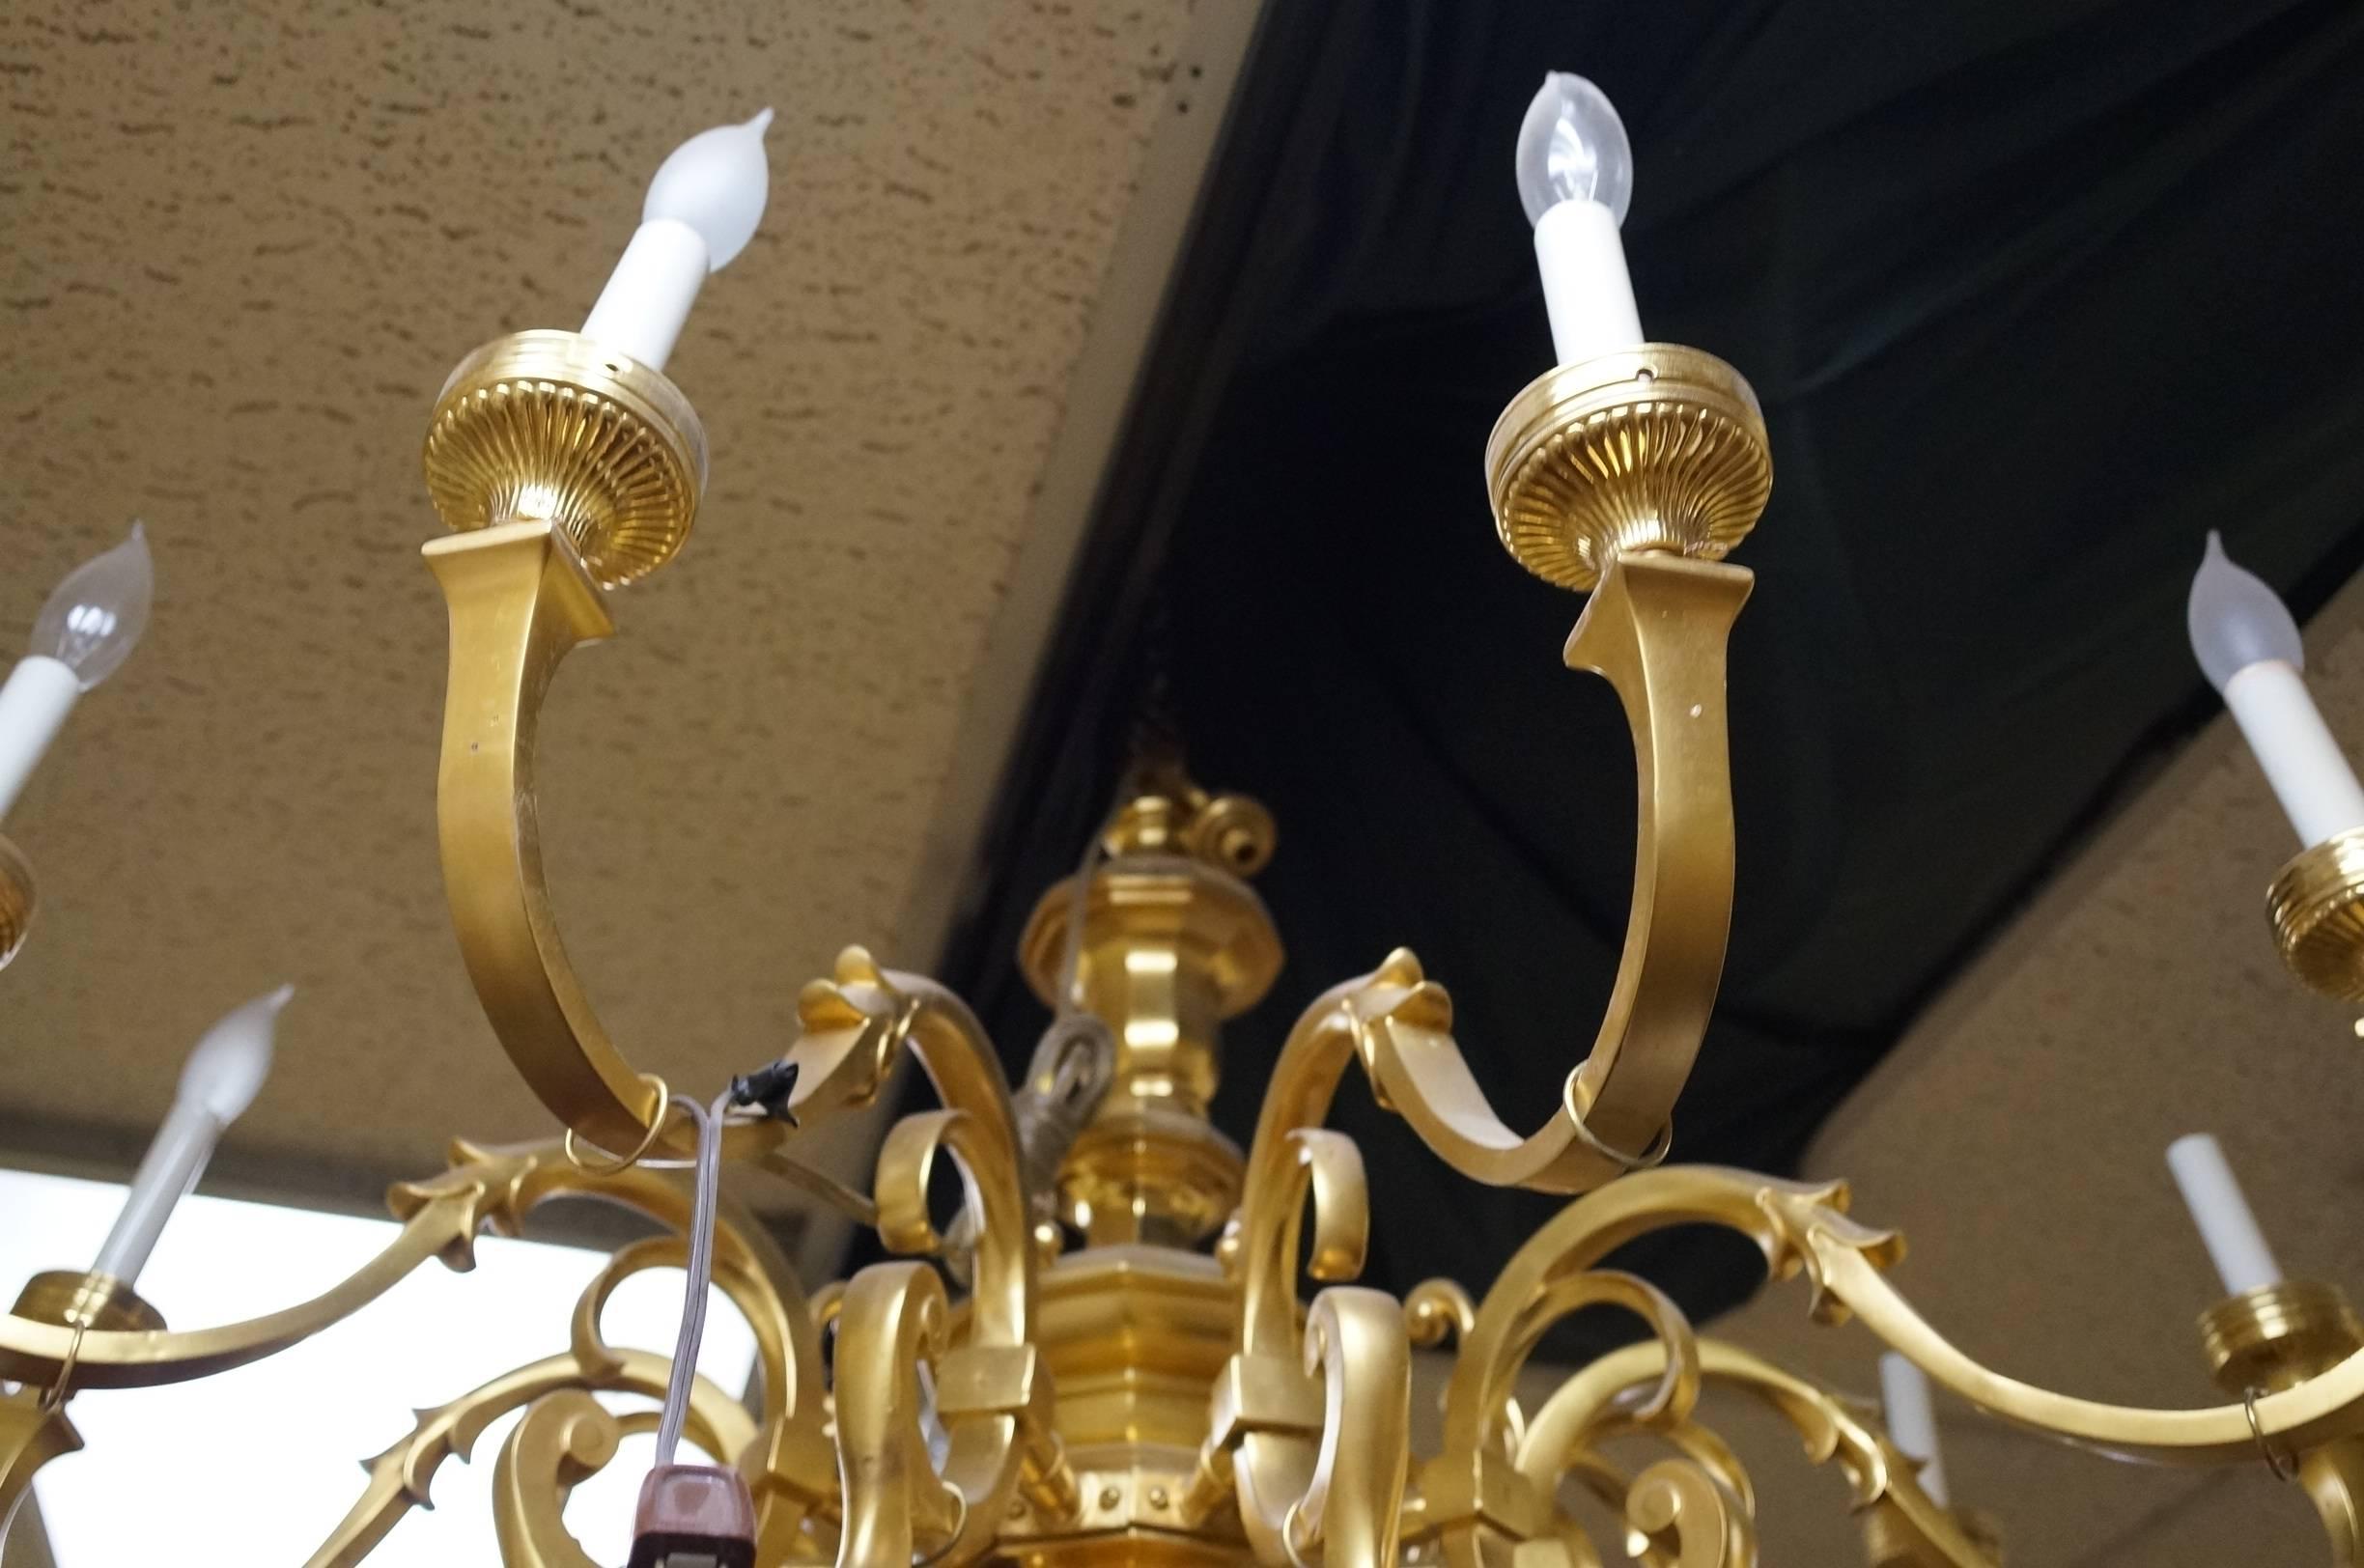 Large Regency style gilt bronze chandelier.
Stock Number: L433